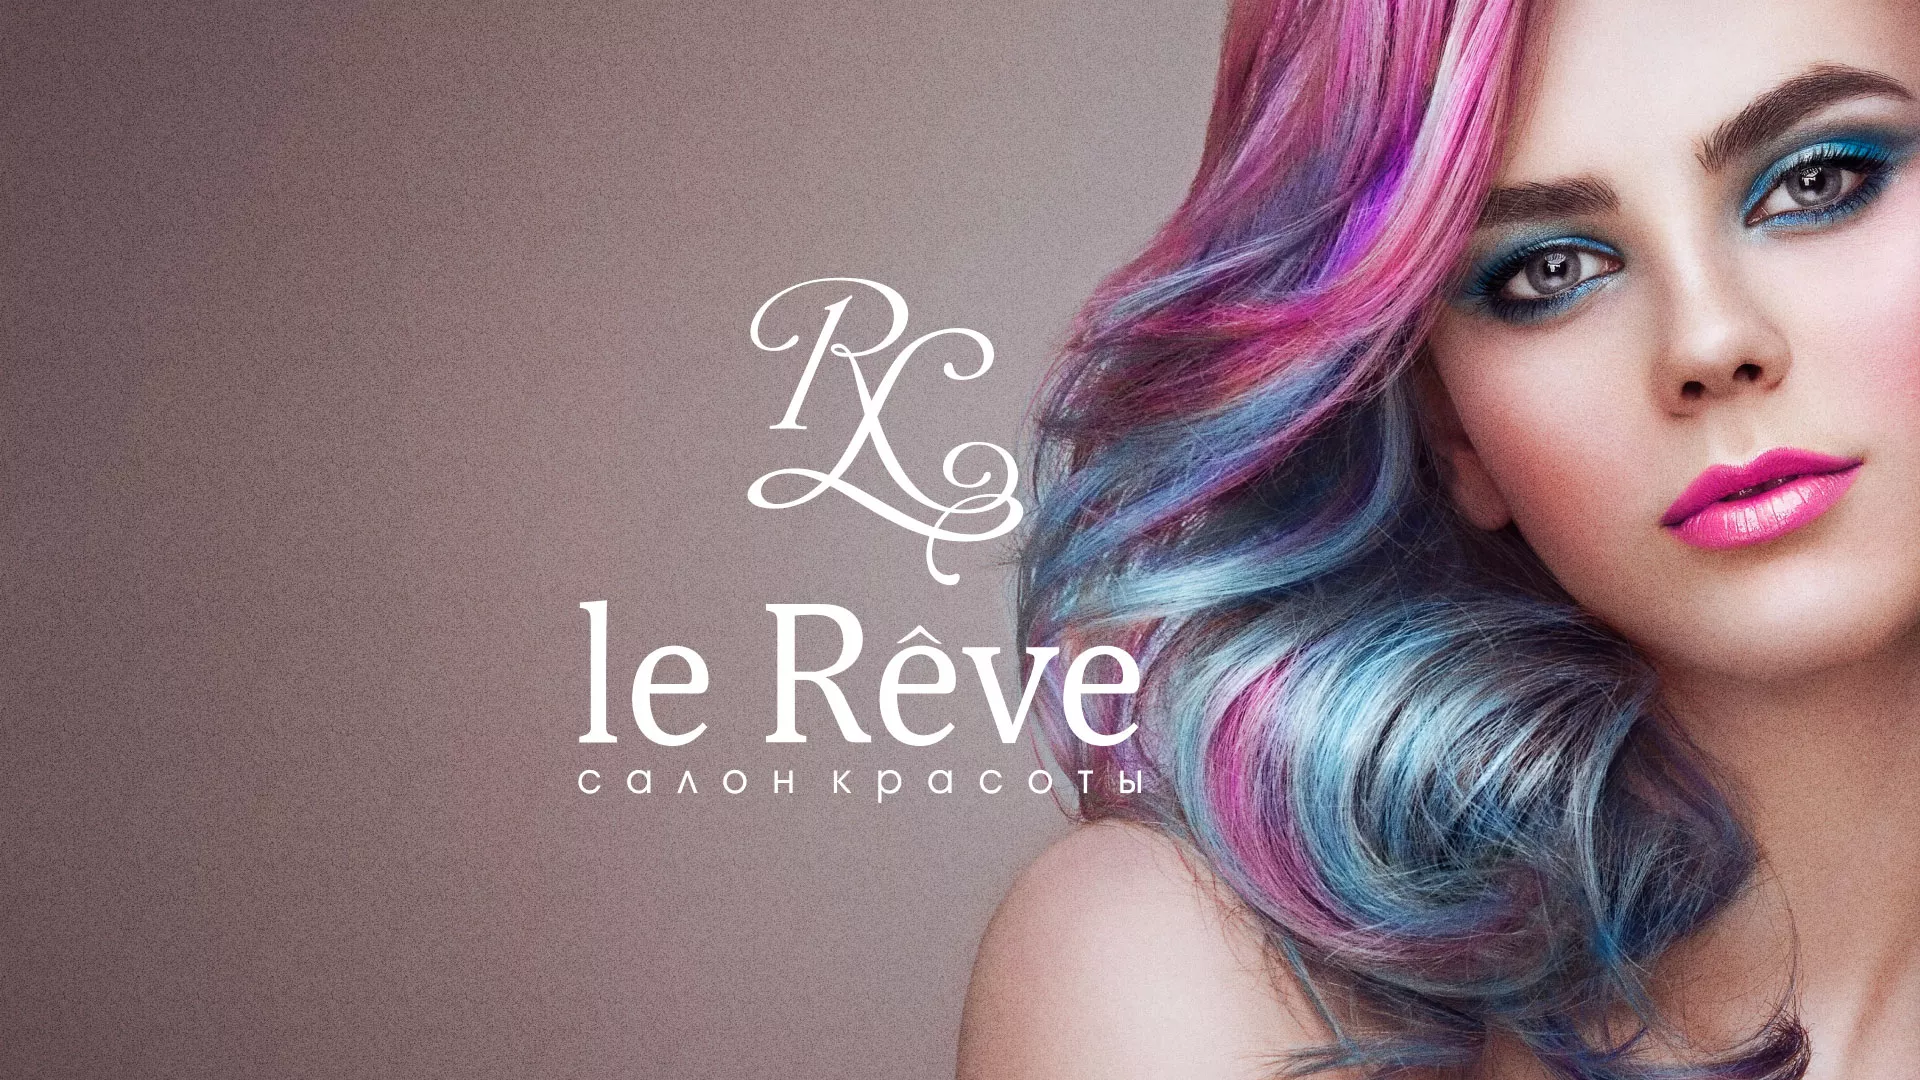 Создание сайта для салона красоты «Le Reve» в Сарове